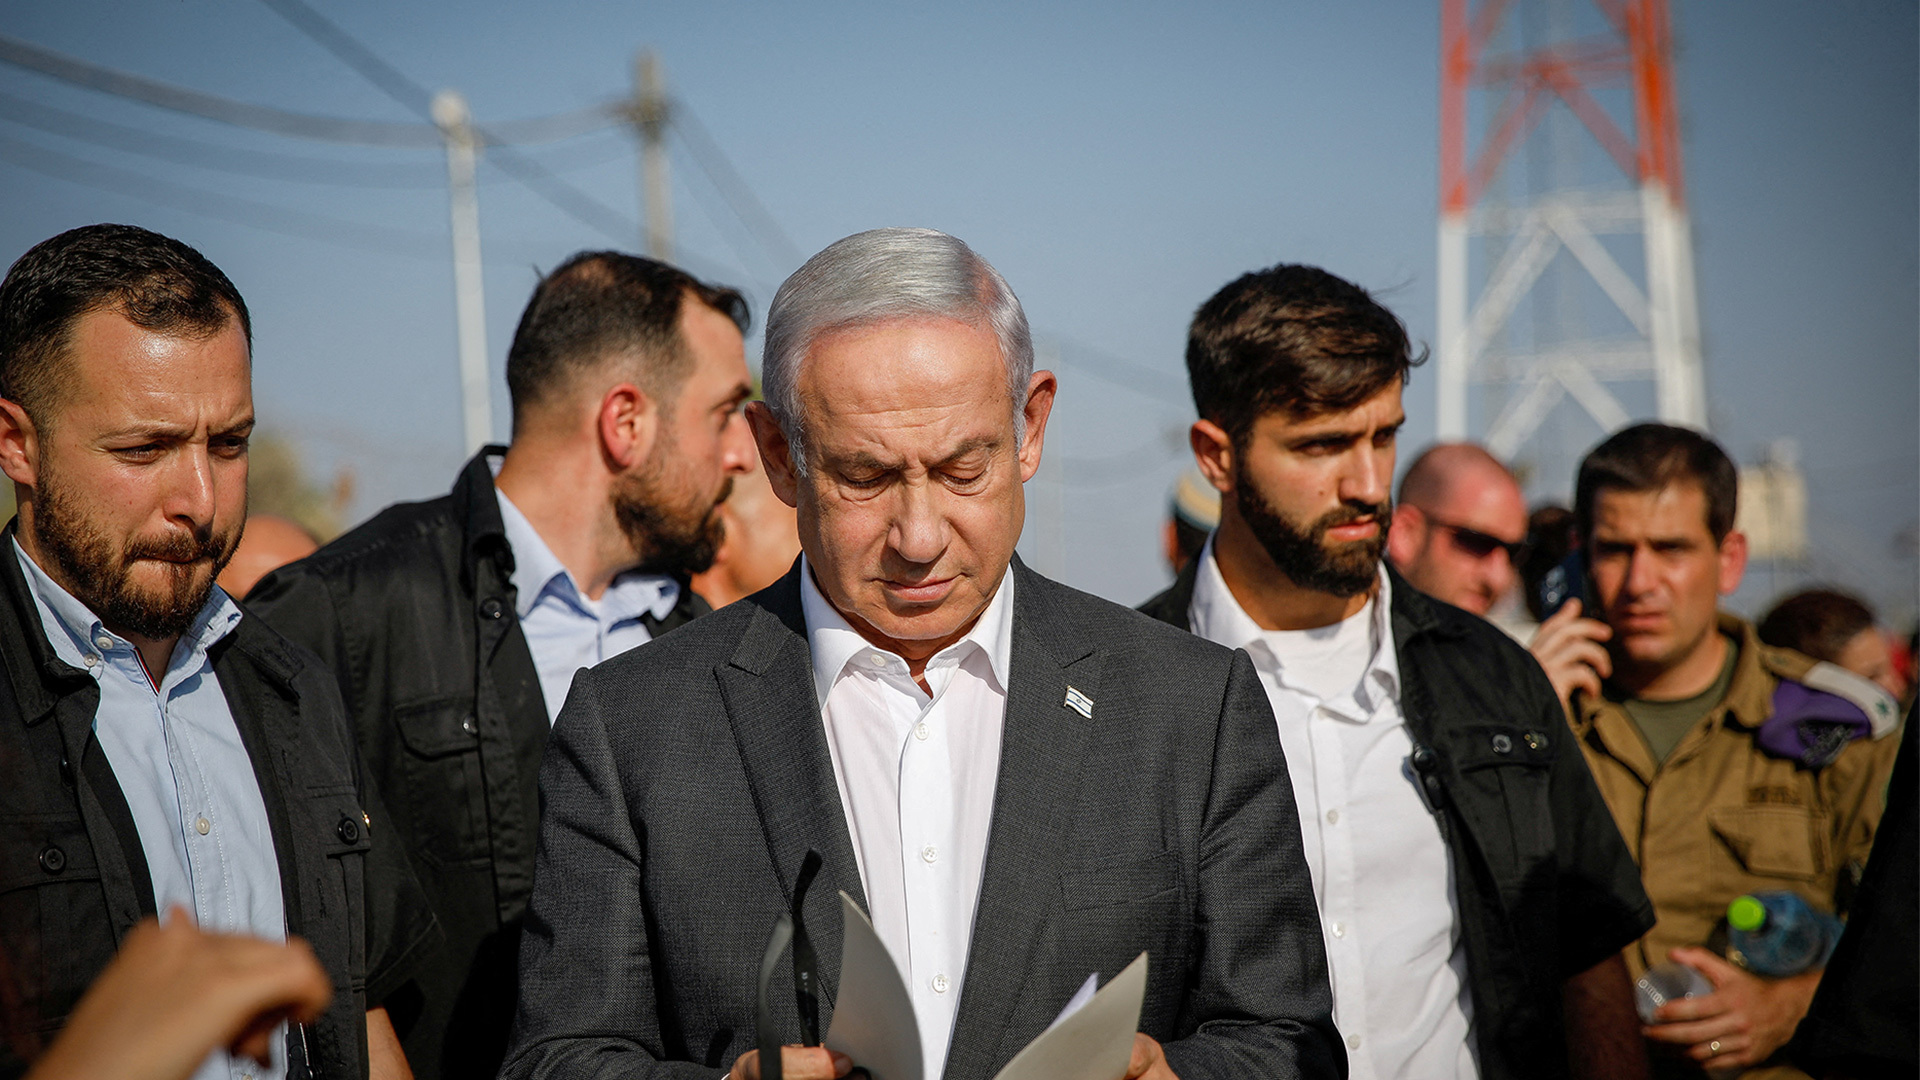 إعلام إسرائيلي: حماس منتصرة بمعركة الرواية وتحرك لمنع أوامر اعتقال لنتنياهو | البرامج – البوكس نيوز